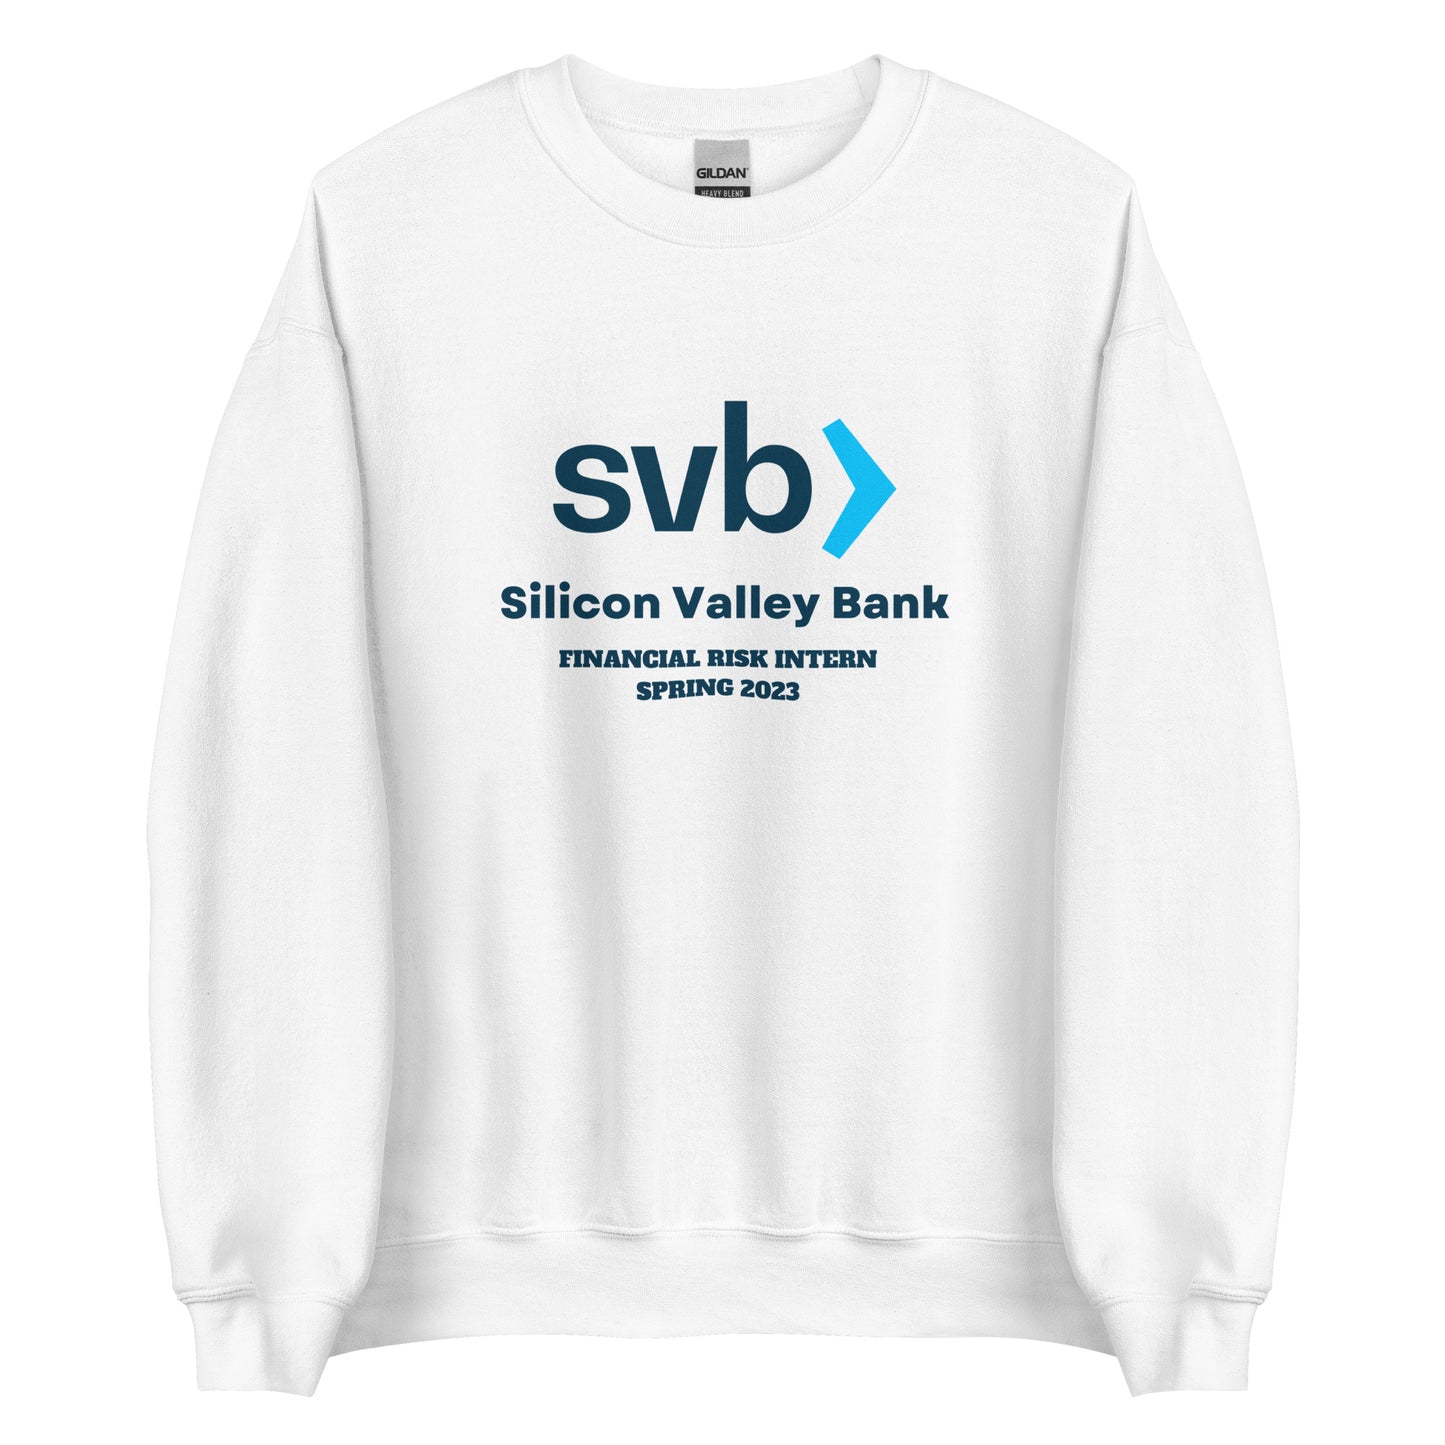 SVB Bank Sweatshirt